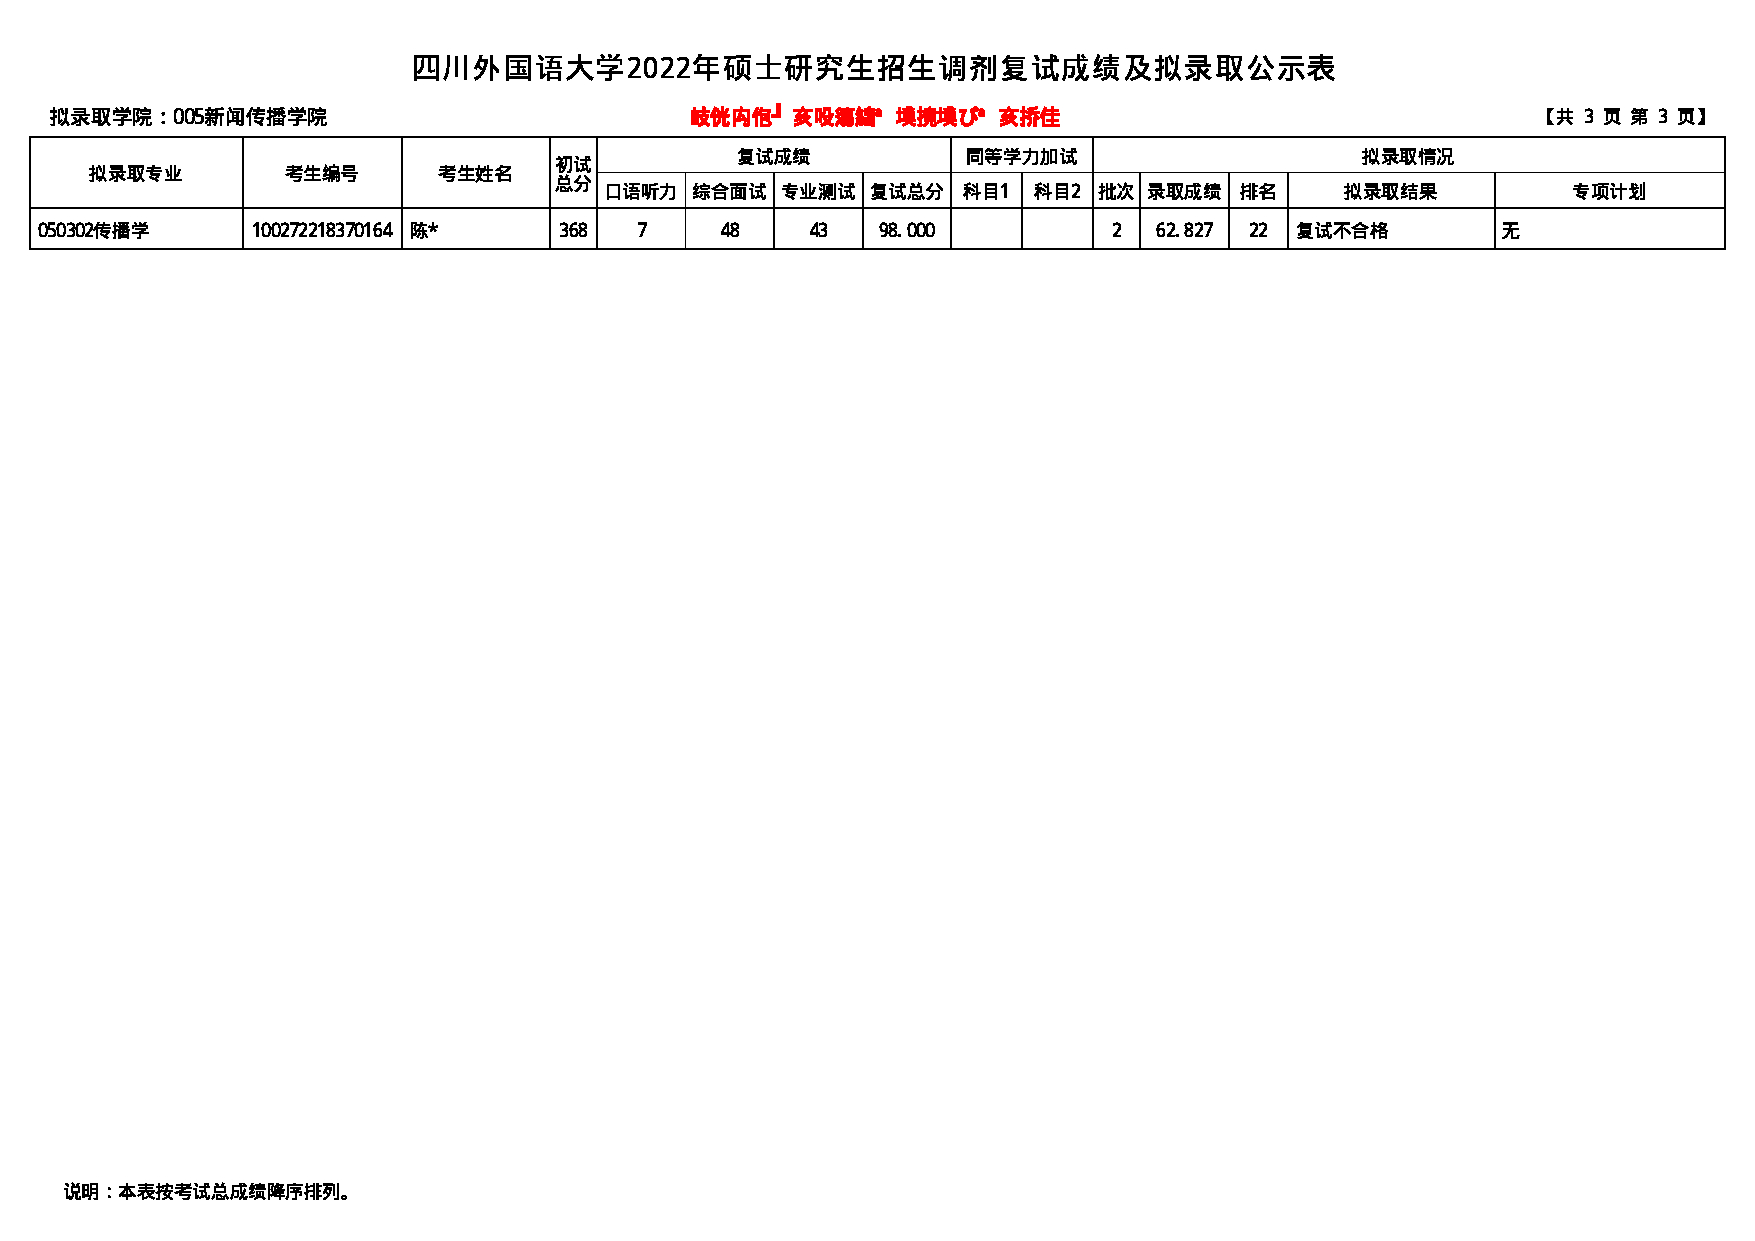 2022考研拟录取名单：四川外国语大学2022年考研 005新闻传播学院 拟录取名单第3页